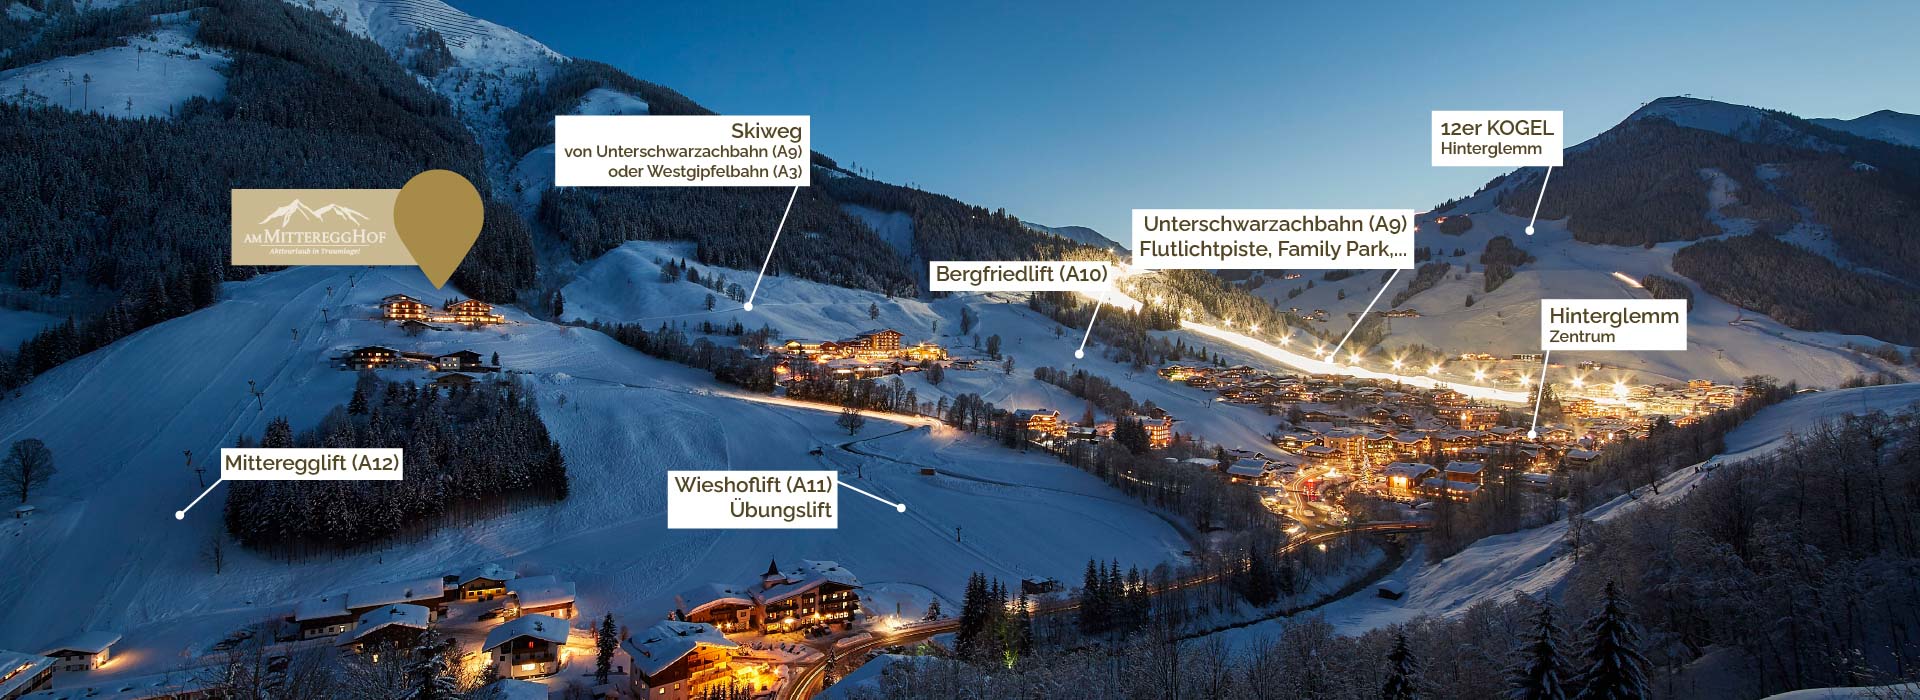 Ski In - Ski Out, der Mitteregghof mitten im Geschehen hoch über Saalbach Hinterglemm